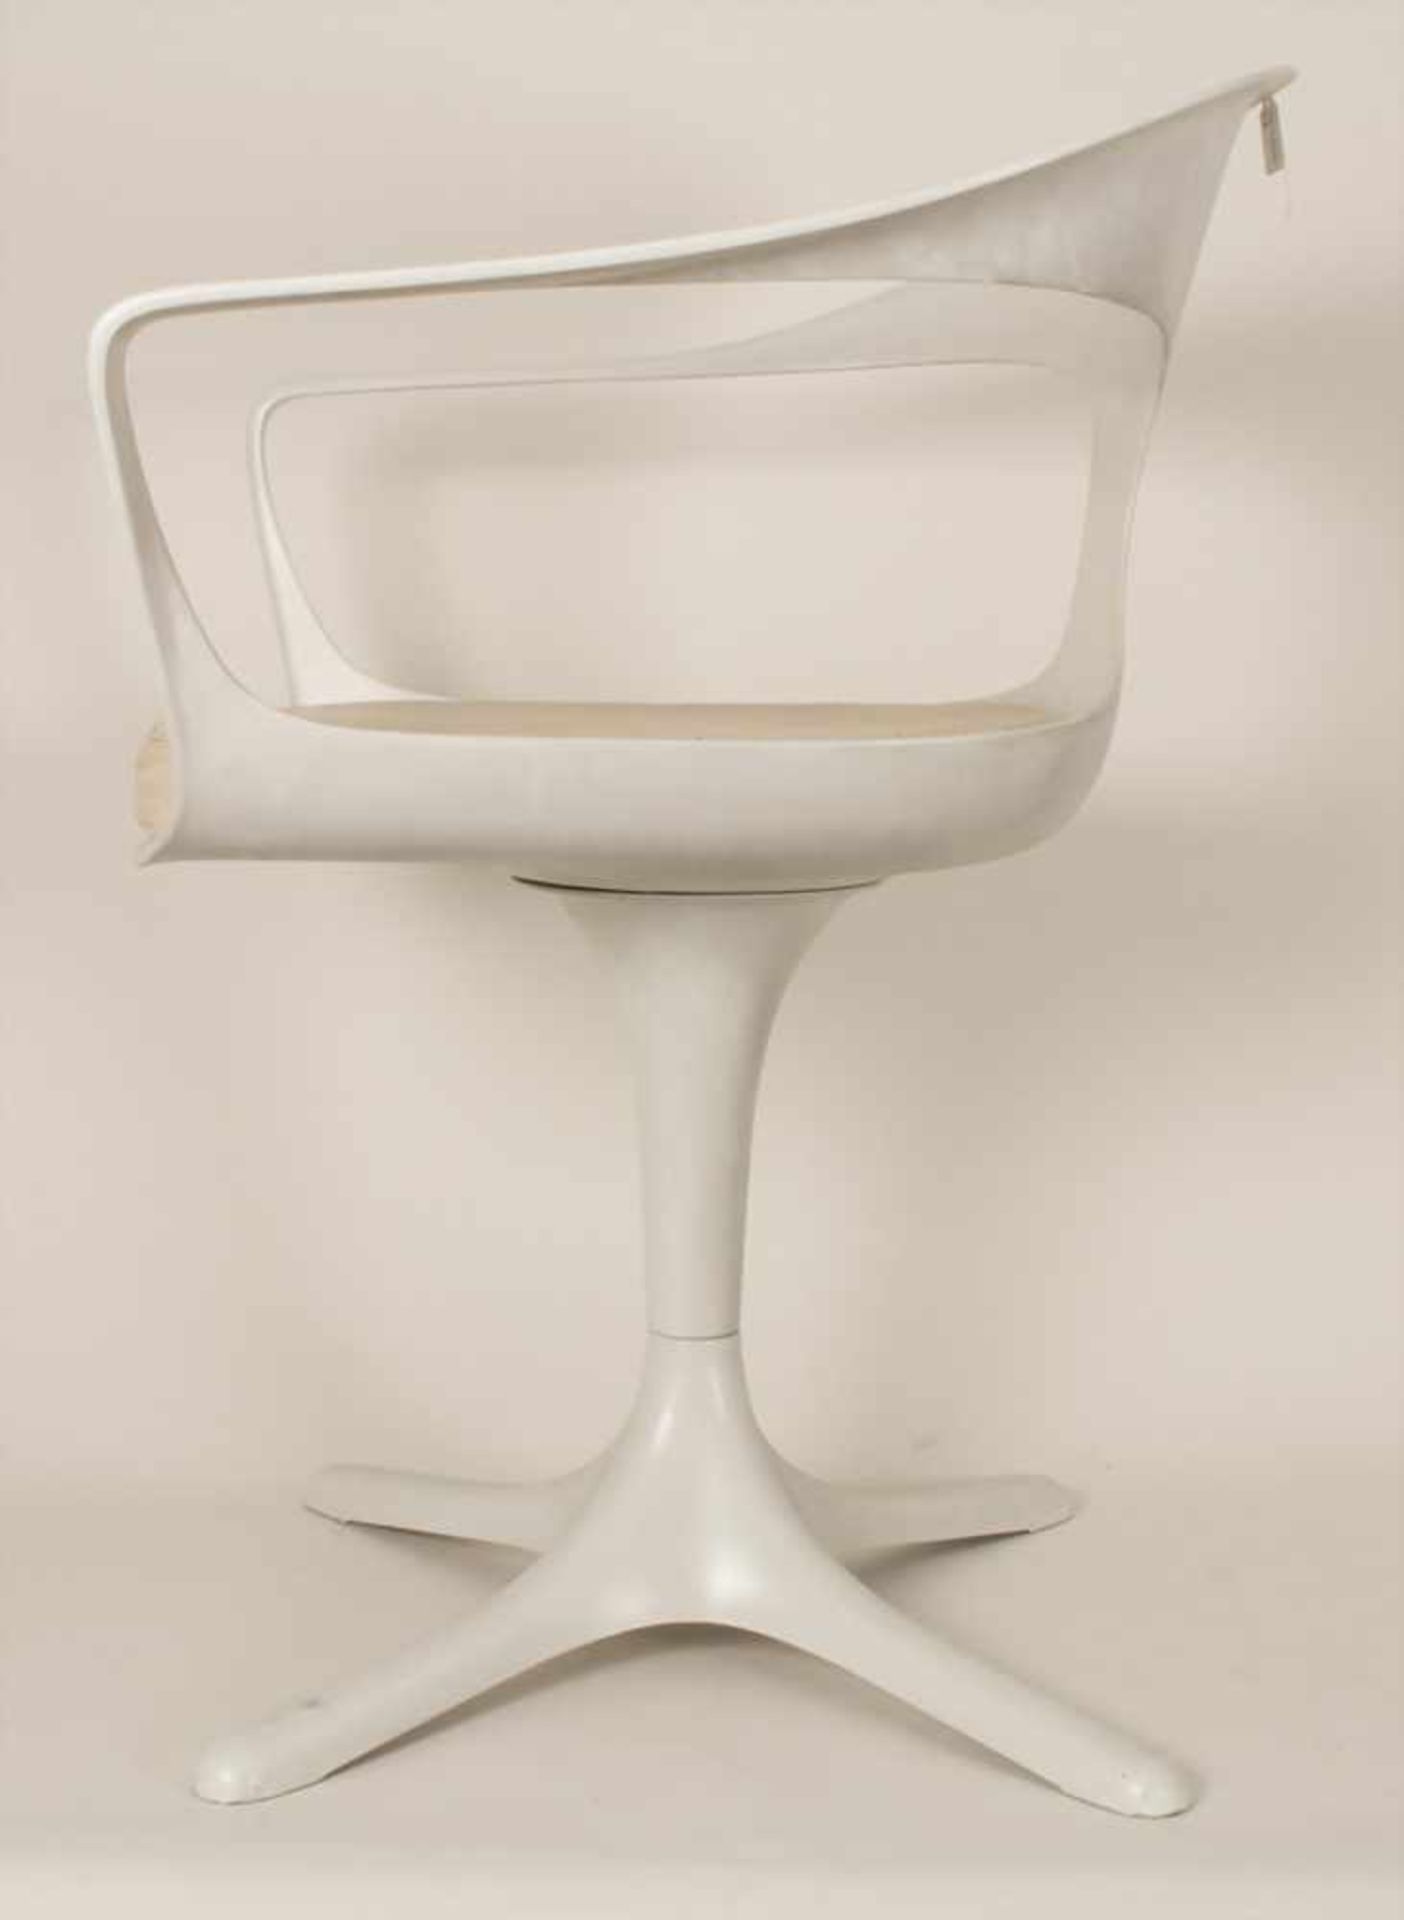 Kunststoffstuhl, Lübke Topline, Entwurf Konrad Schäfer, um 1970Material: Kunststoff, Sitzpolster mit - Bild 2 aus 4